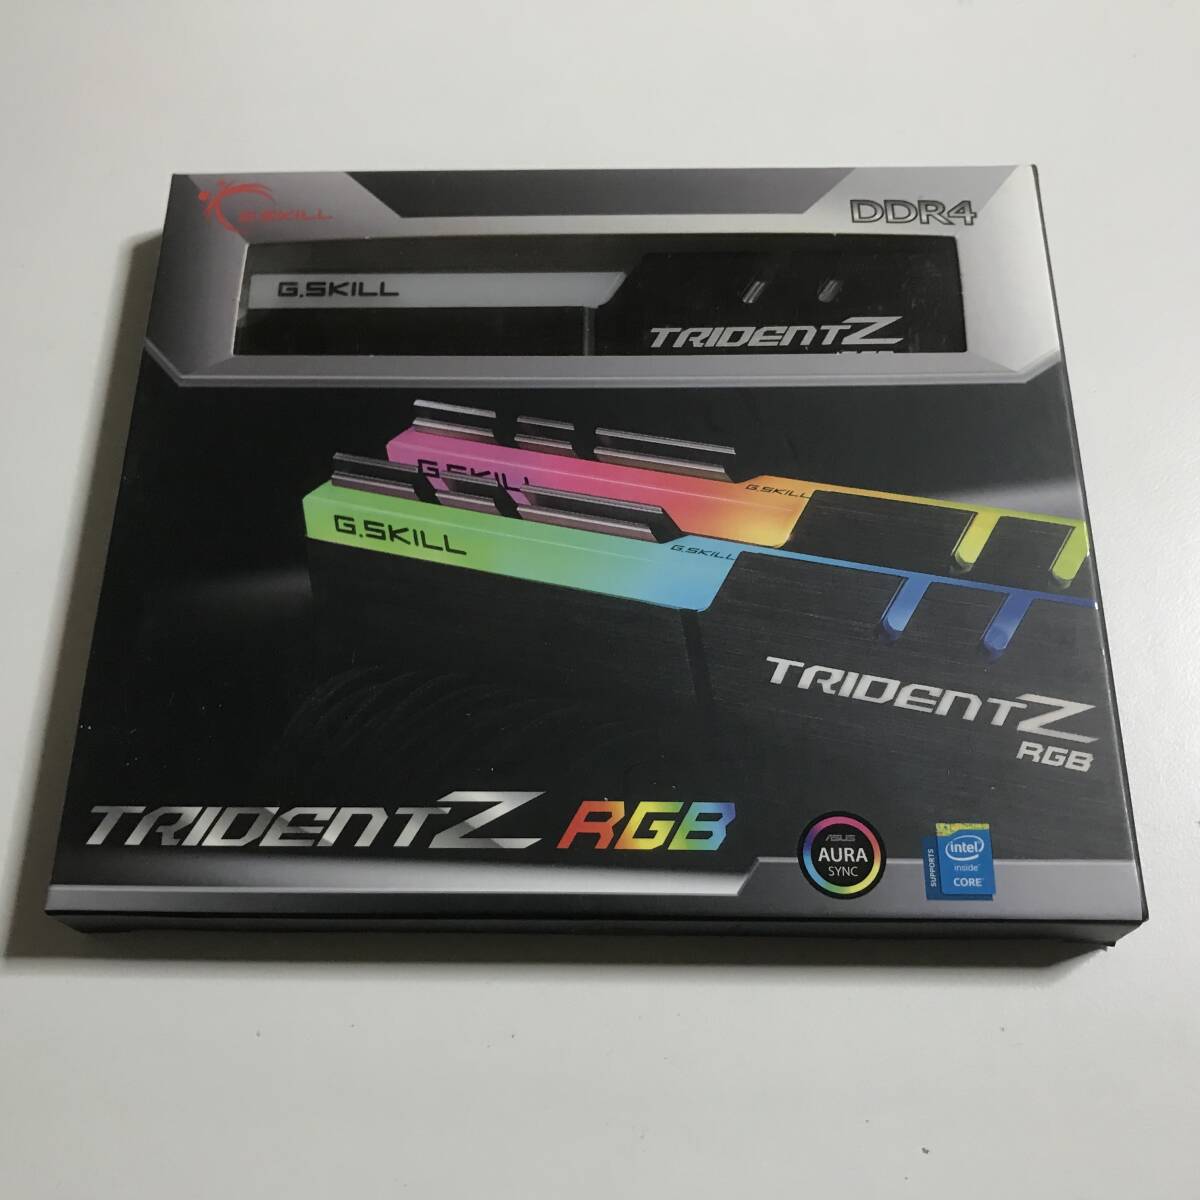 G.SKILL TRIDENT Z RGB DDR4メモリ 16GB(8GB×2) [F4-3200C16D-16GTZR] ②_画像1